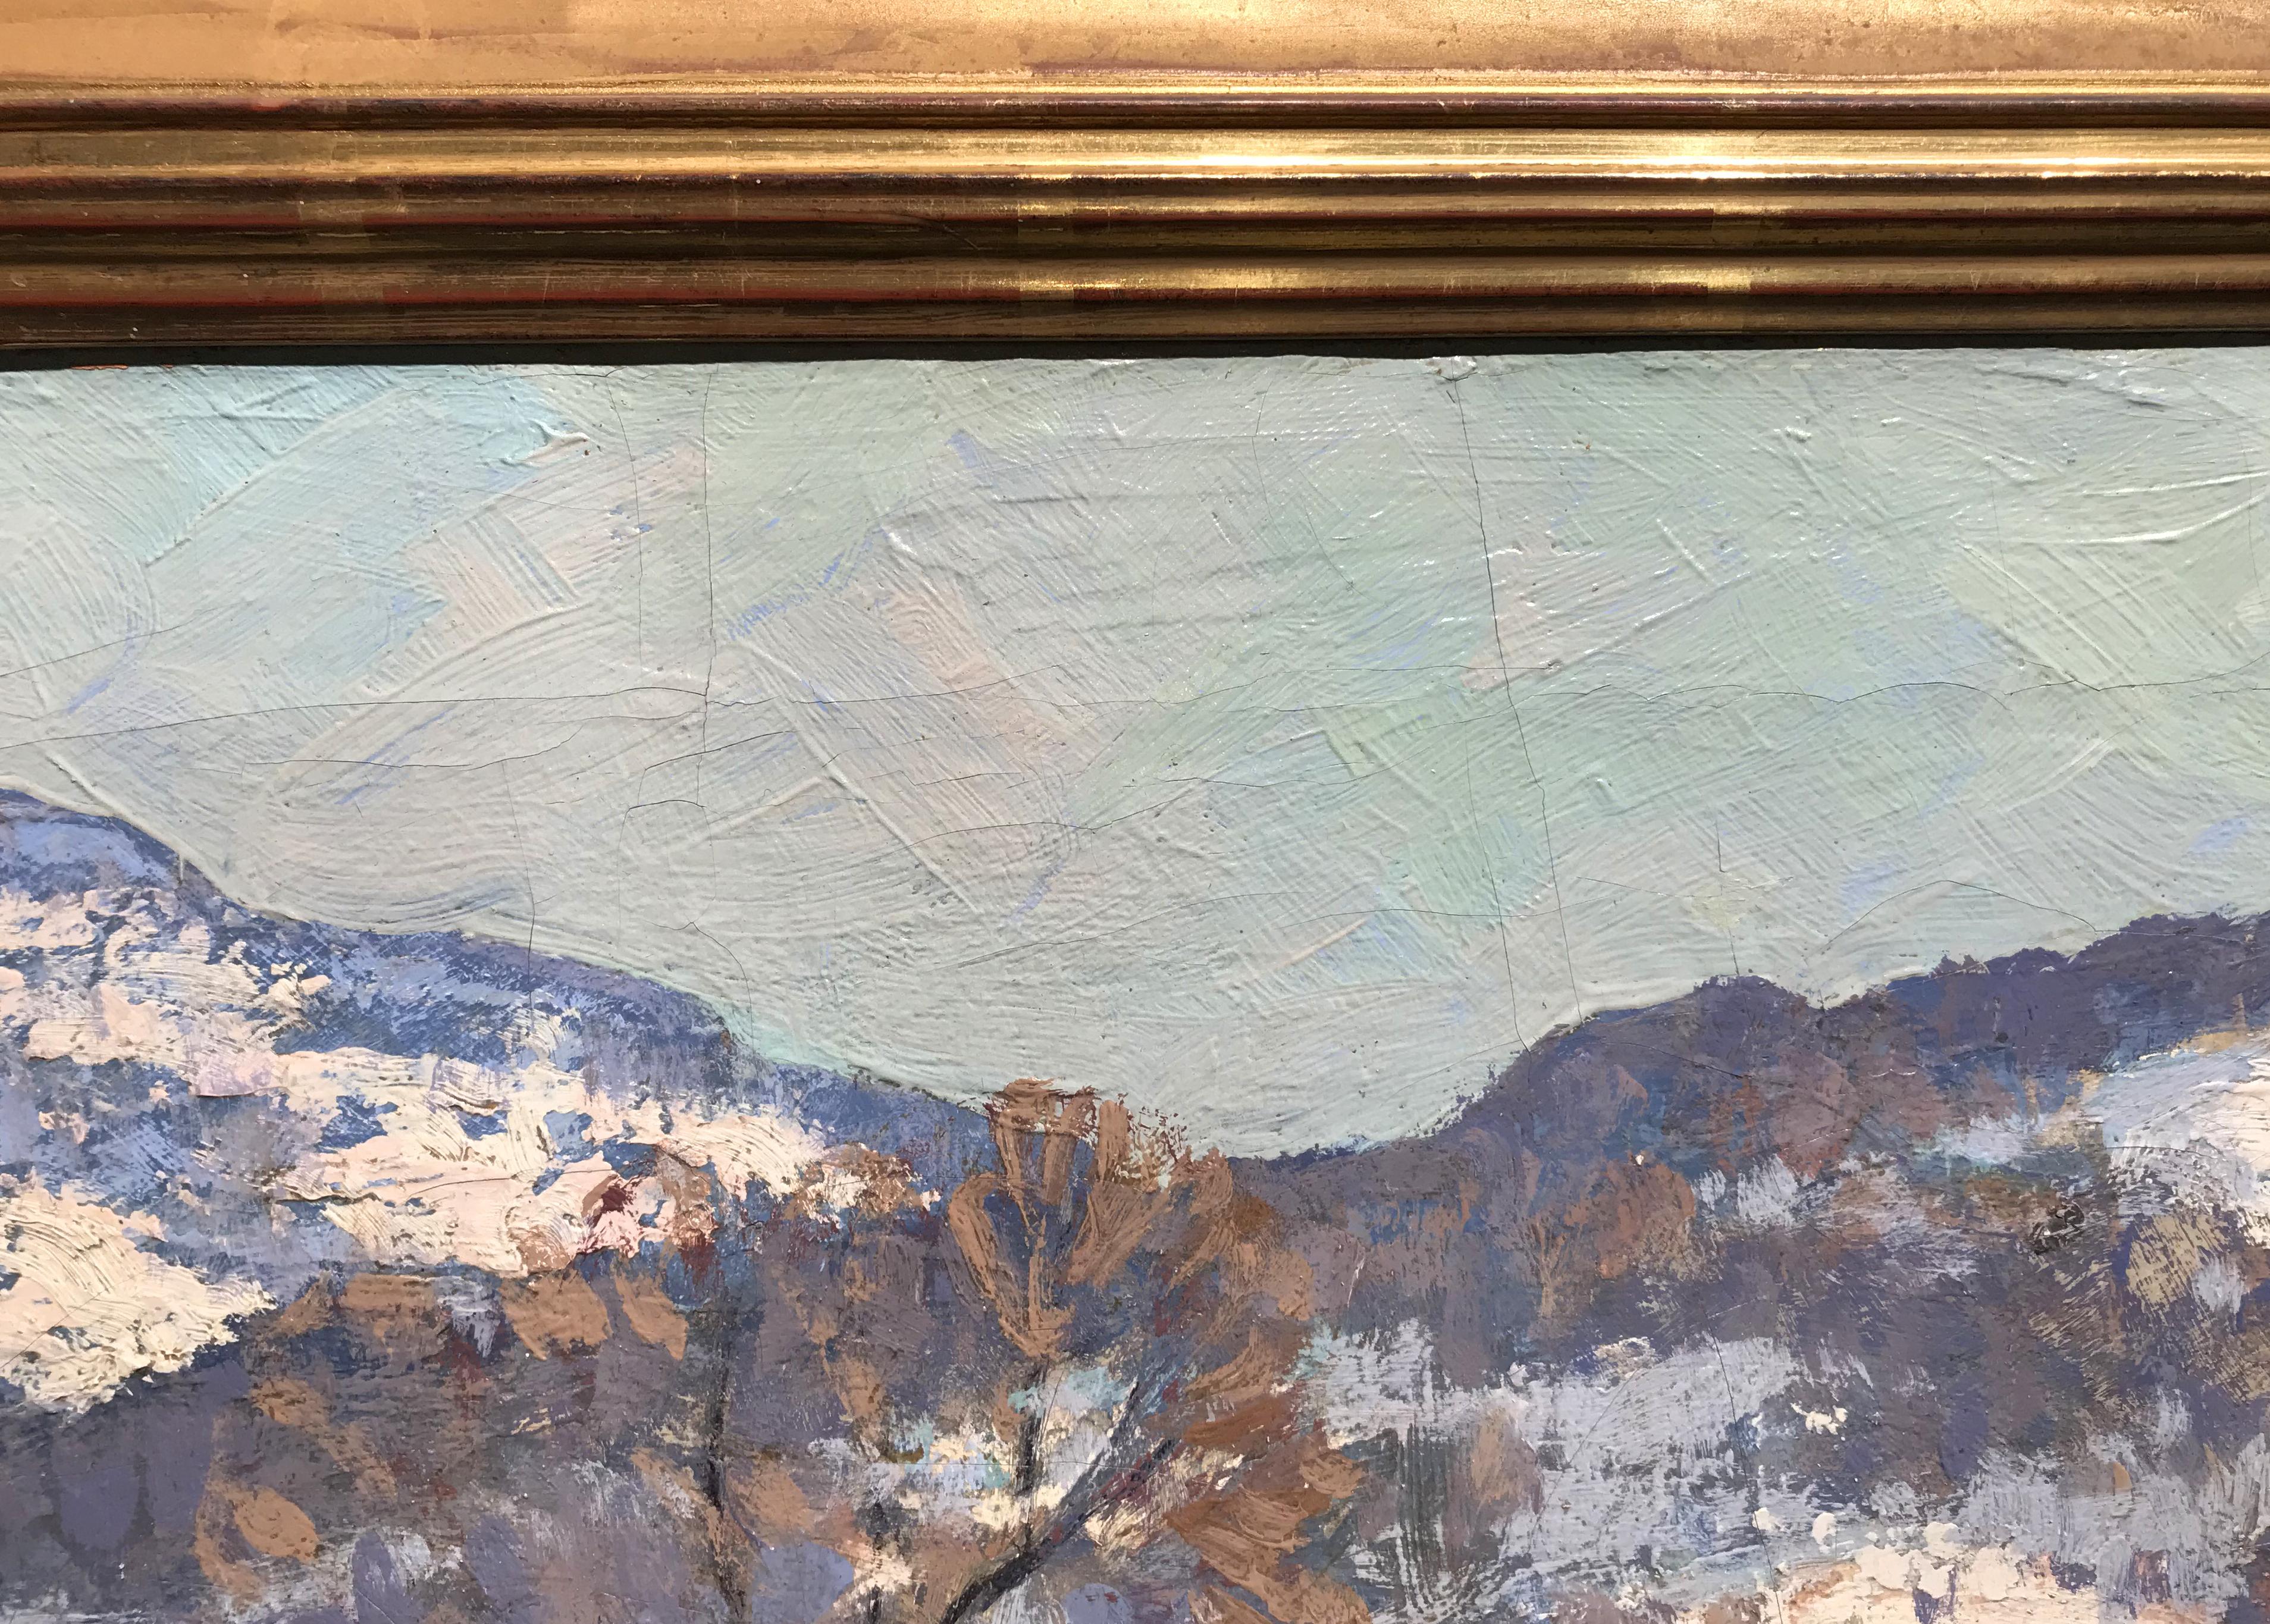 Ce beau paysage impressionniste à l'huile représentant un moulin en hiver a été peint par l'artiste germano-américain Walter Koeniger (1881-1943). Koeniger est né en Allemagne, fils d'architecte, et s'est tourné vers la peinture après avoir étudié